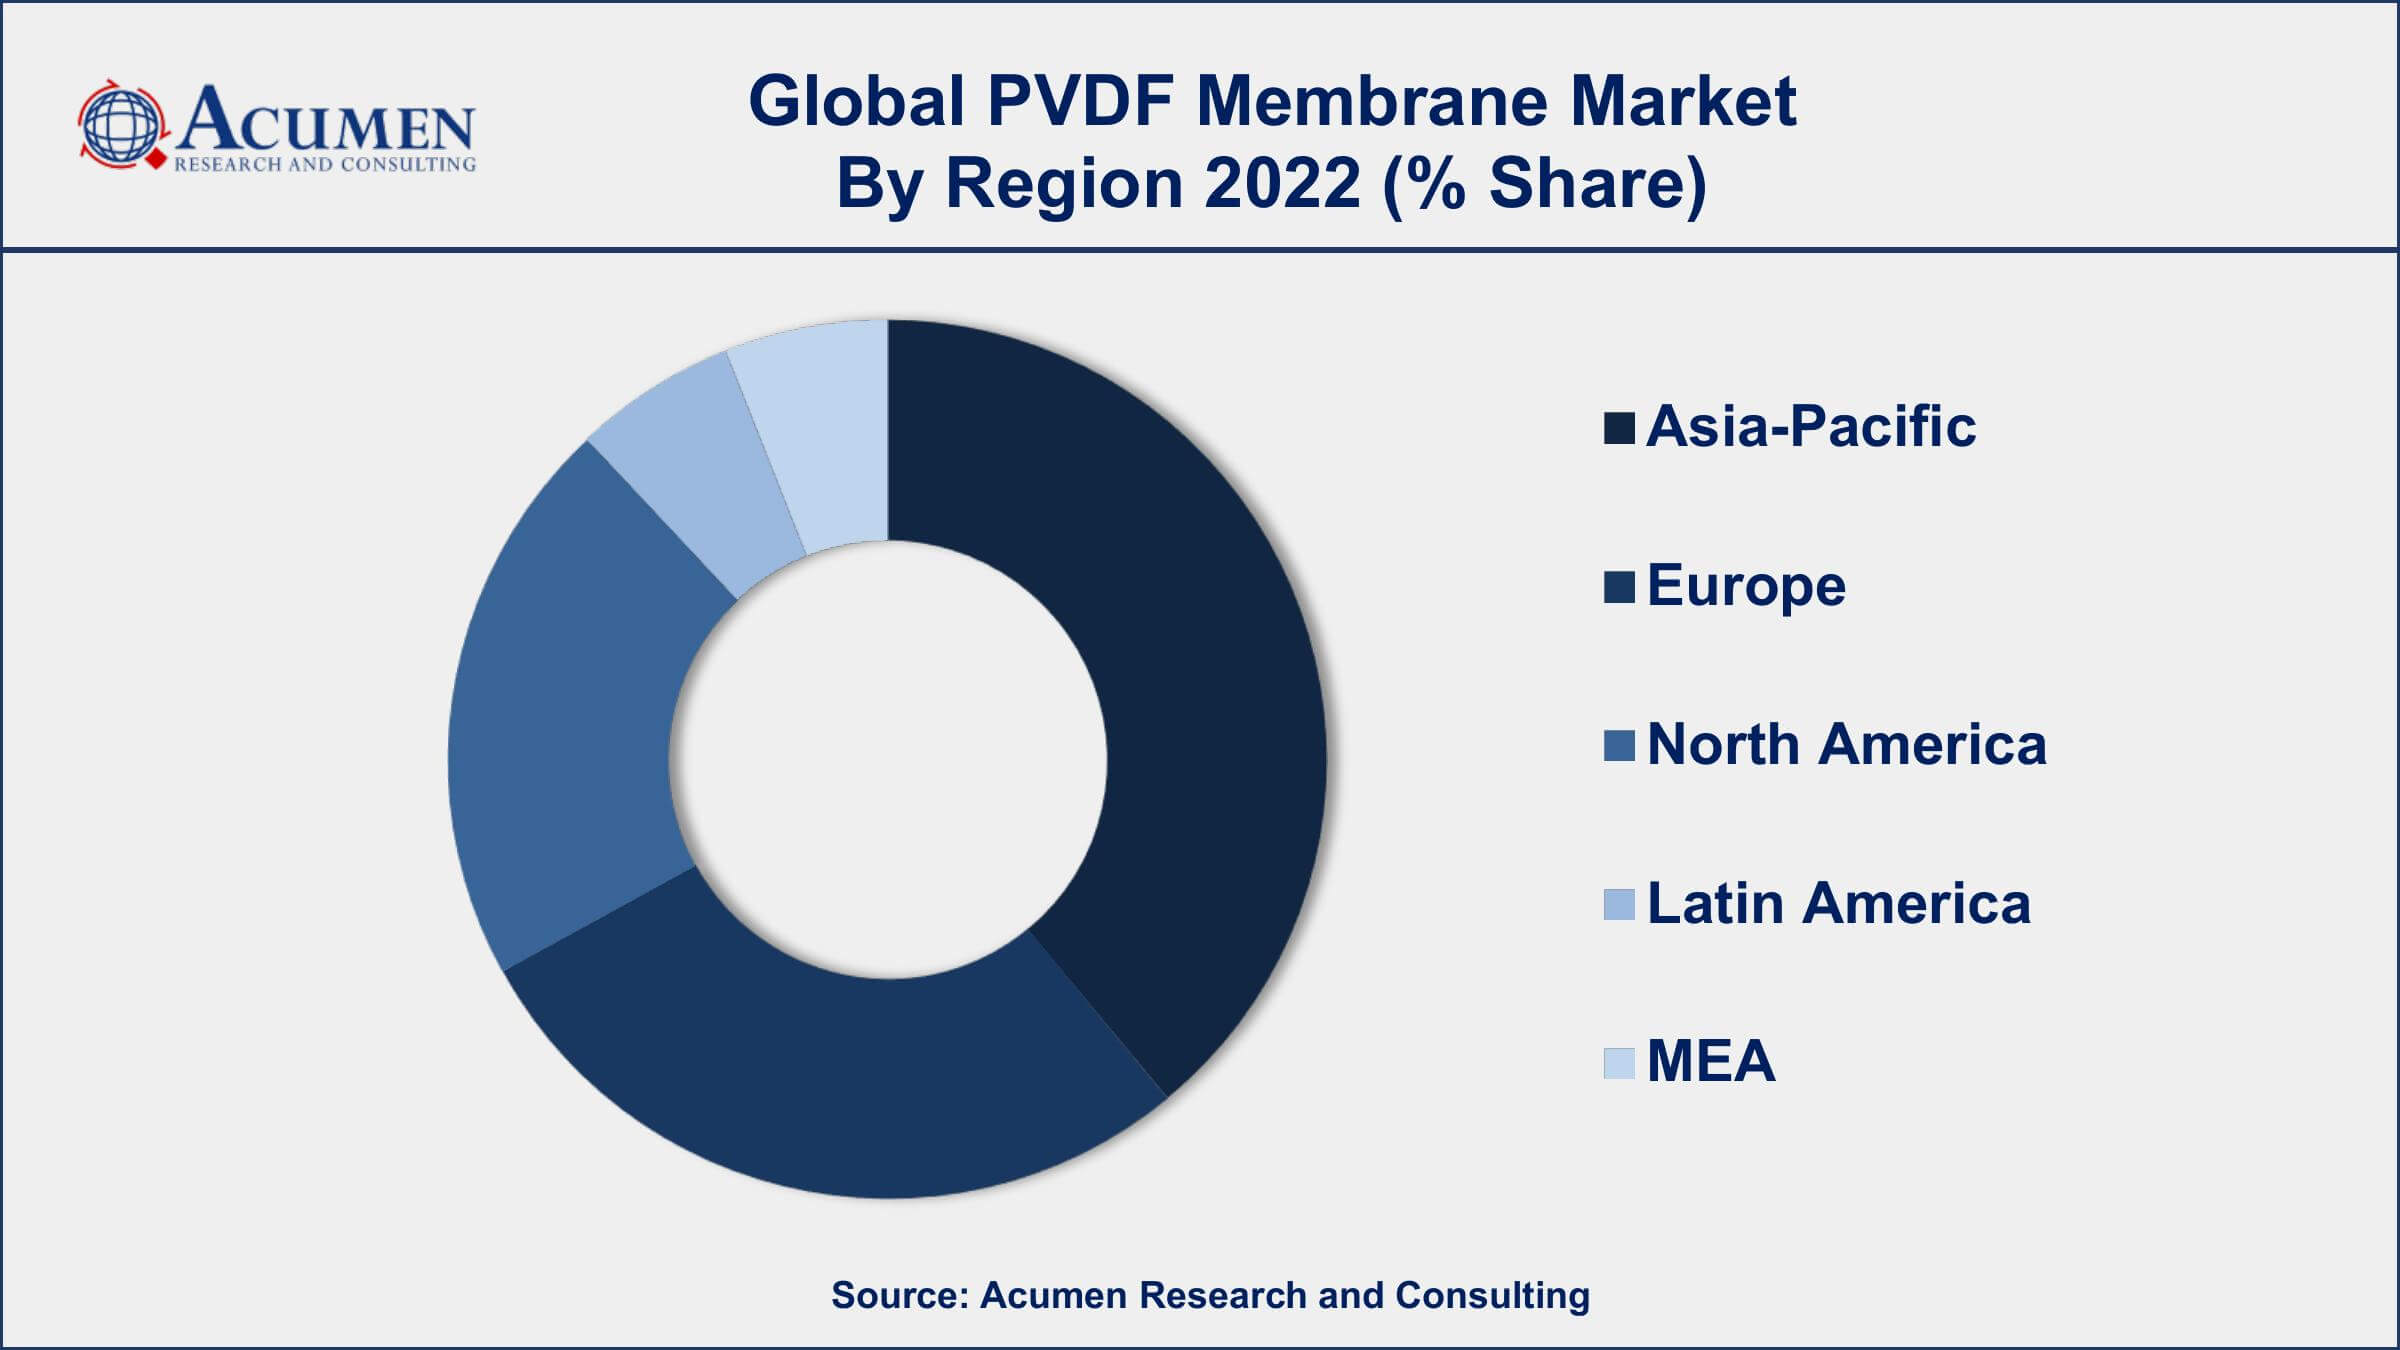 PVDF Membrane Market Drivers